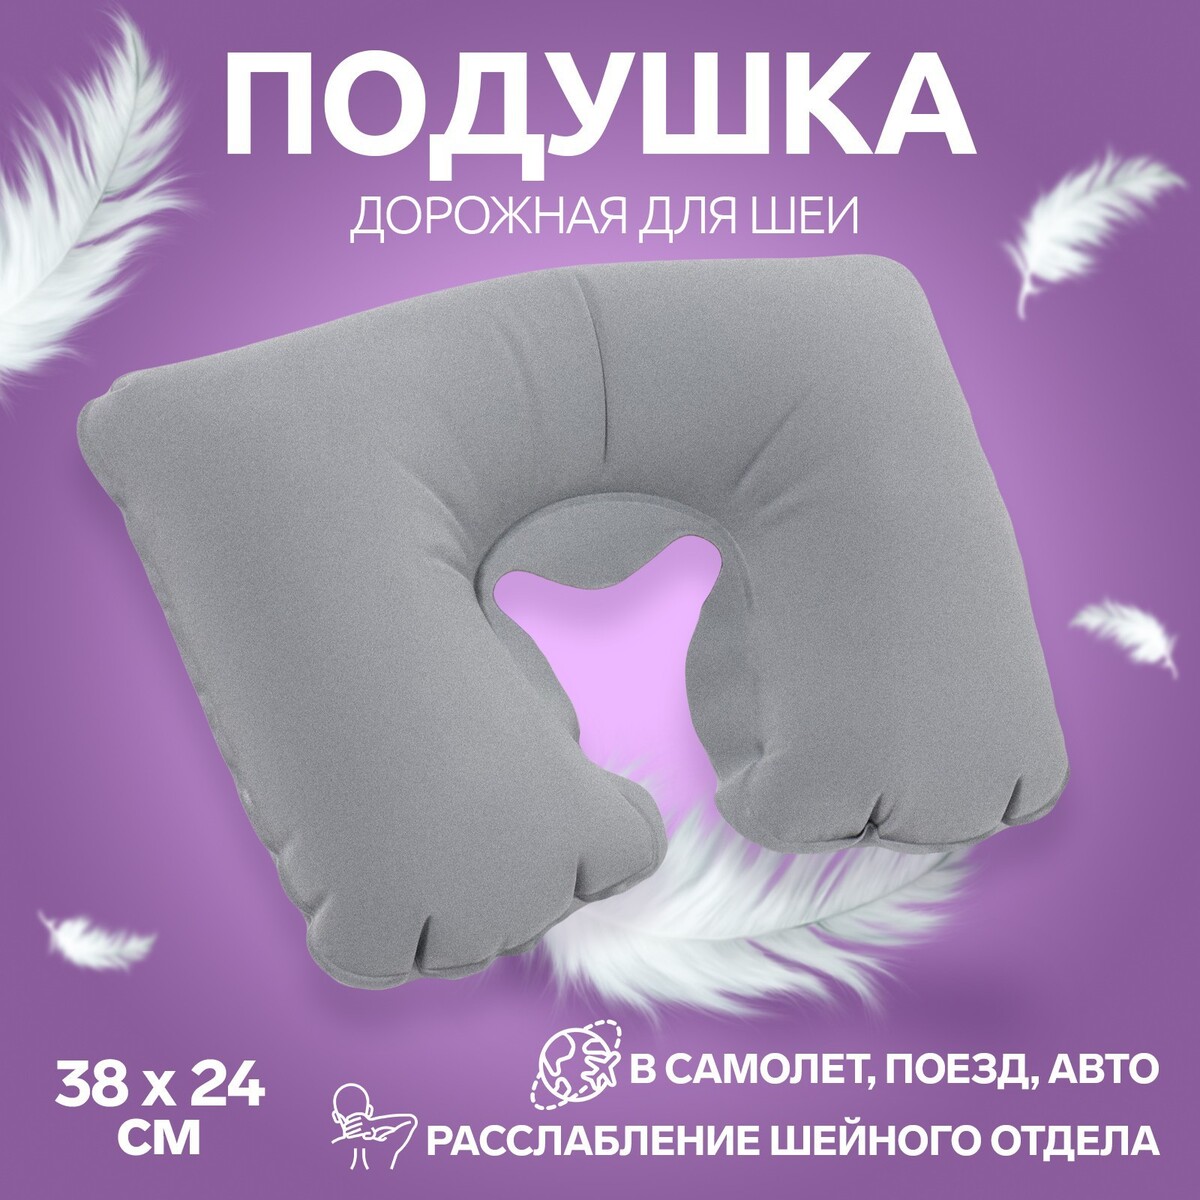 Подушка для шеи дорожная, надувная, 38 × 24 см, цвет серый подушка дорожная надувная 46 × 30 см синий